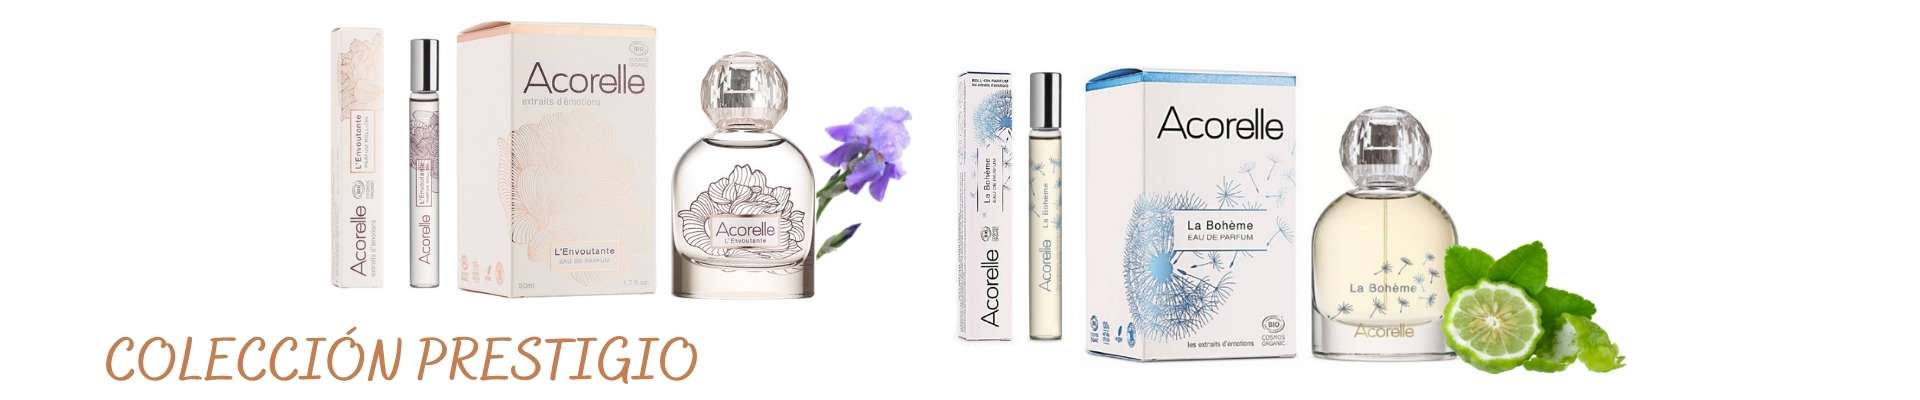 Olfatoterapia perfumes Bio colecci&oacute;n prestigio Acorelle